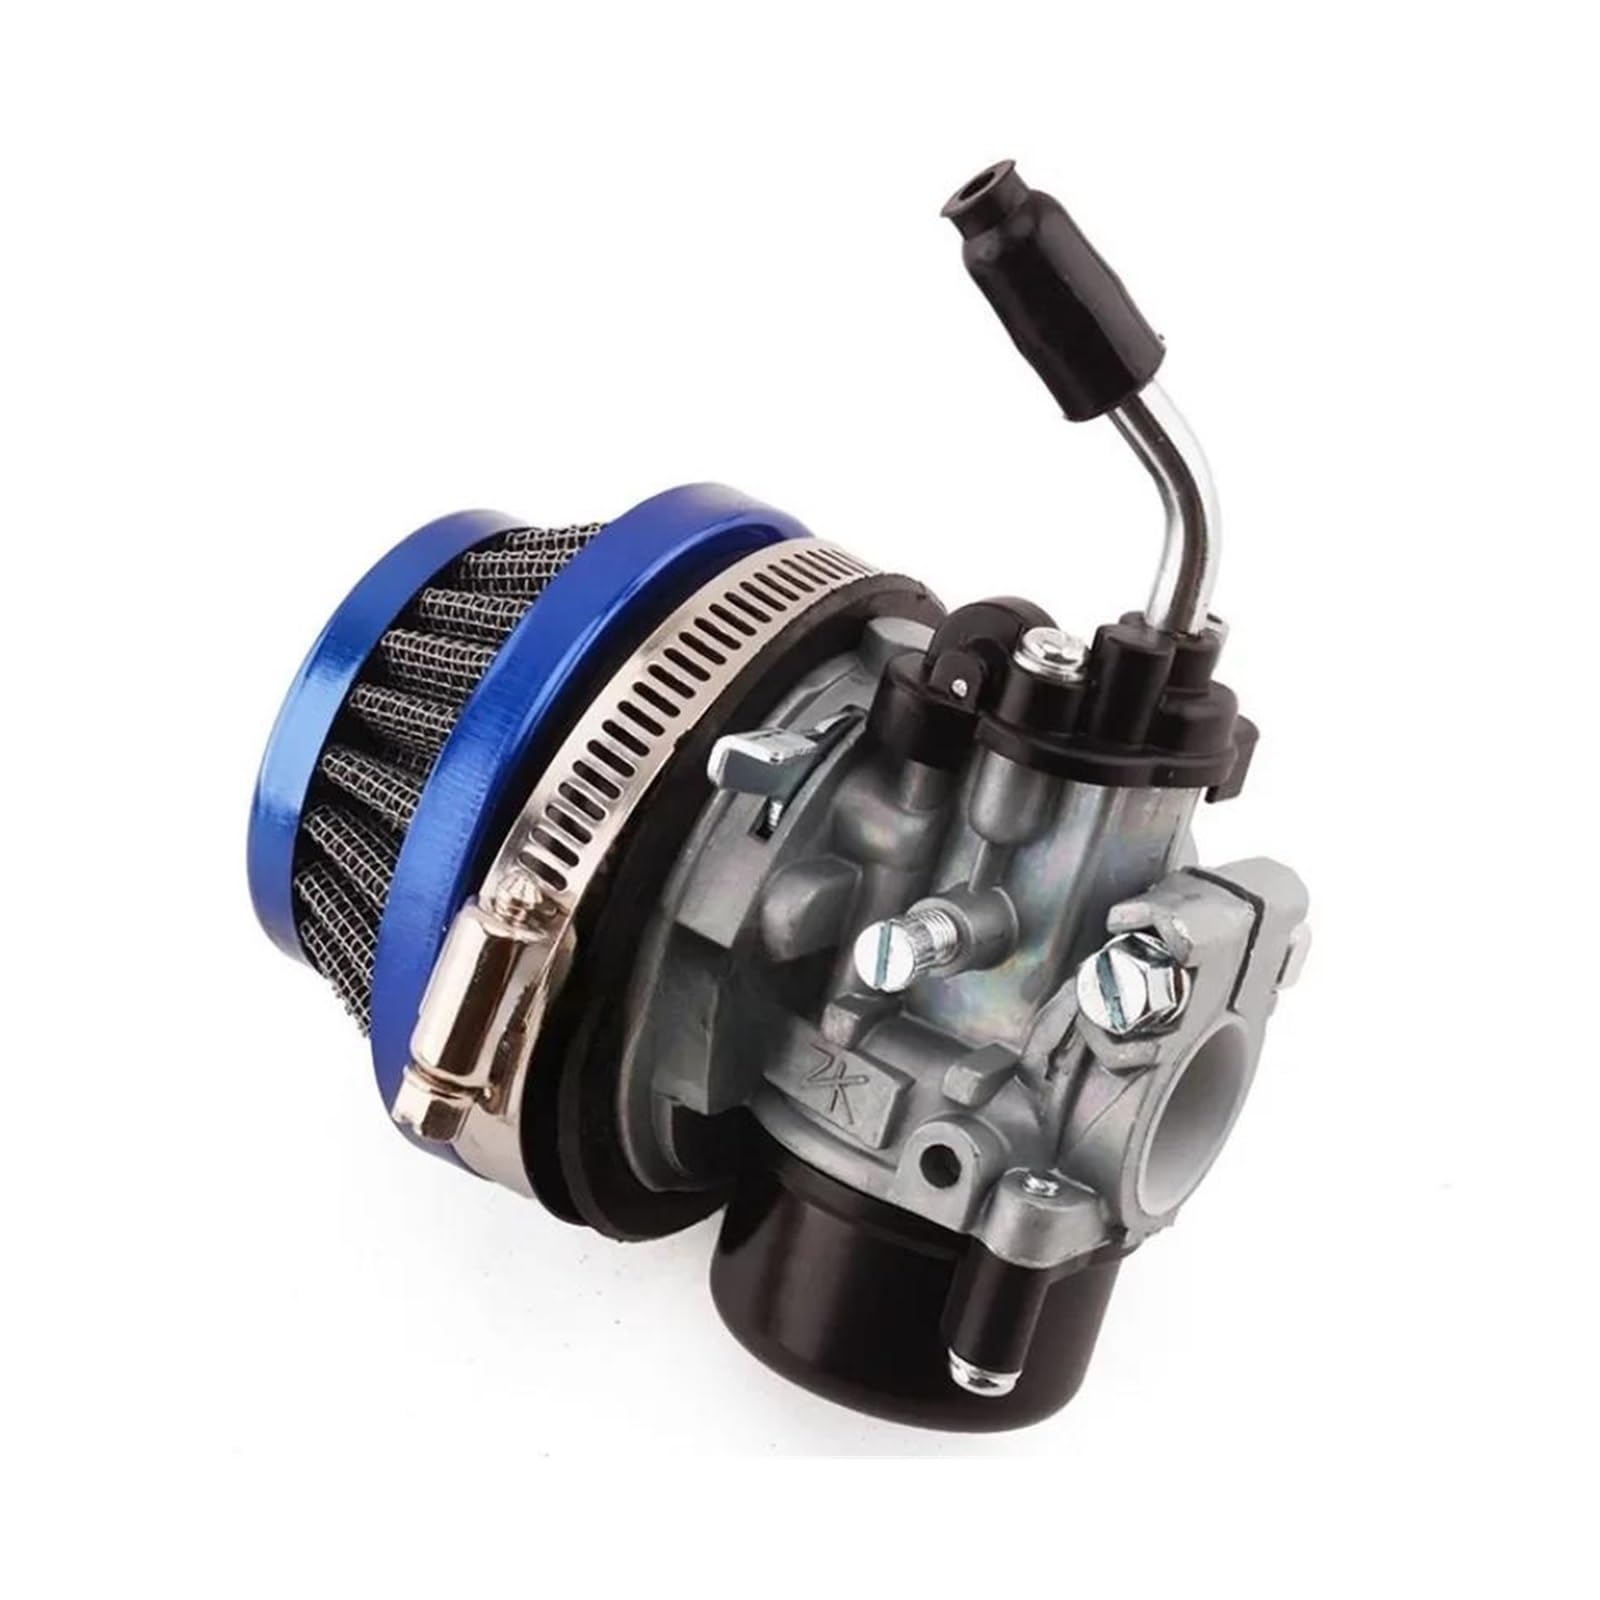 Motor Vergaser Wassergekühlter 2-Takt-Vergaser Mit Ansaugrohr-Luftfilter Für Mini Moto Dirt Pocket Bike ATV 37 49 50 80 Cc Teile(Blau) von MRNQCB